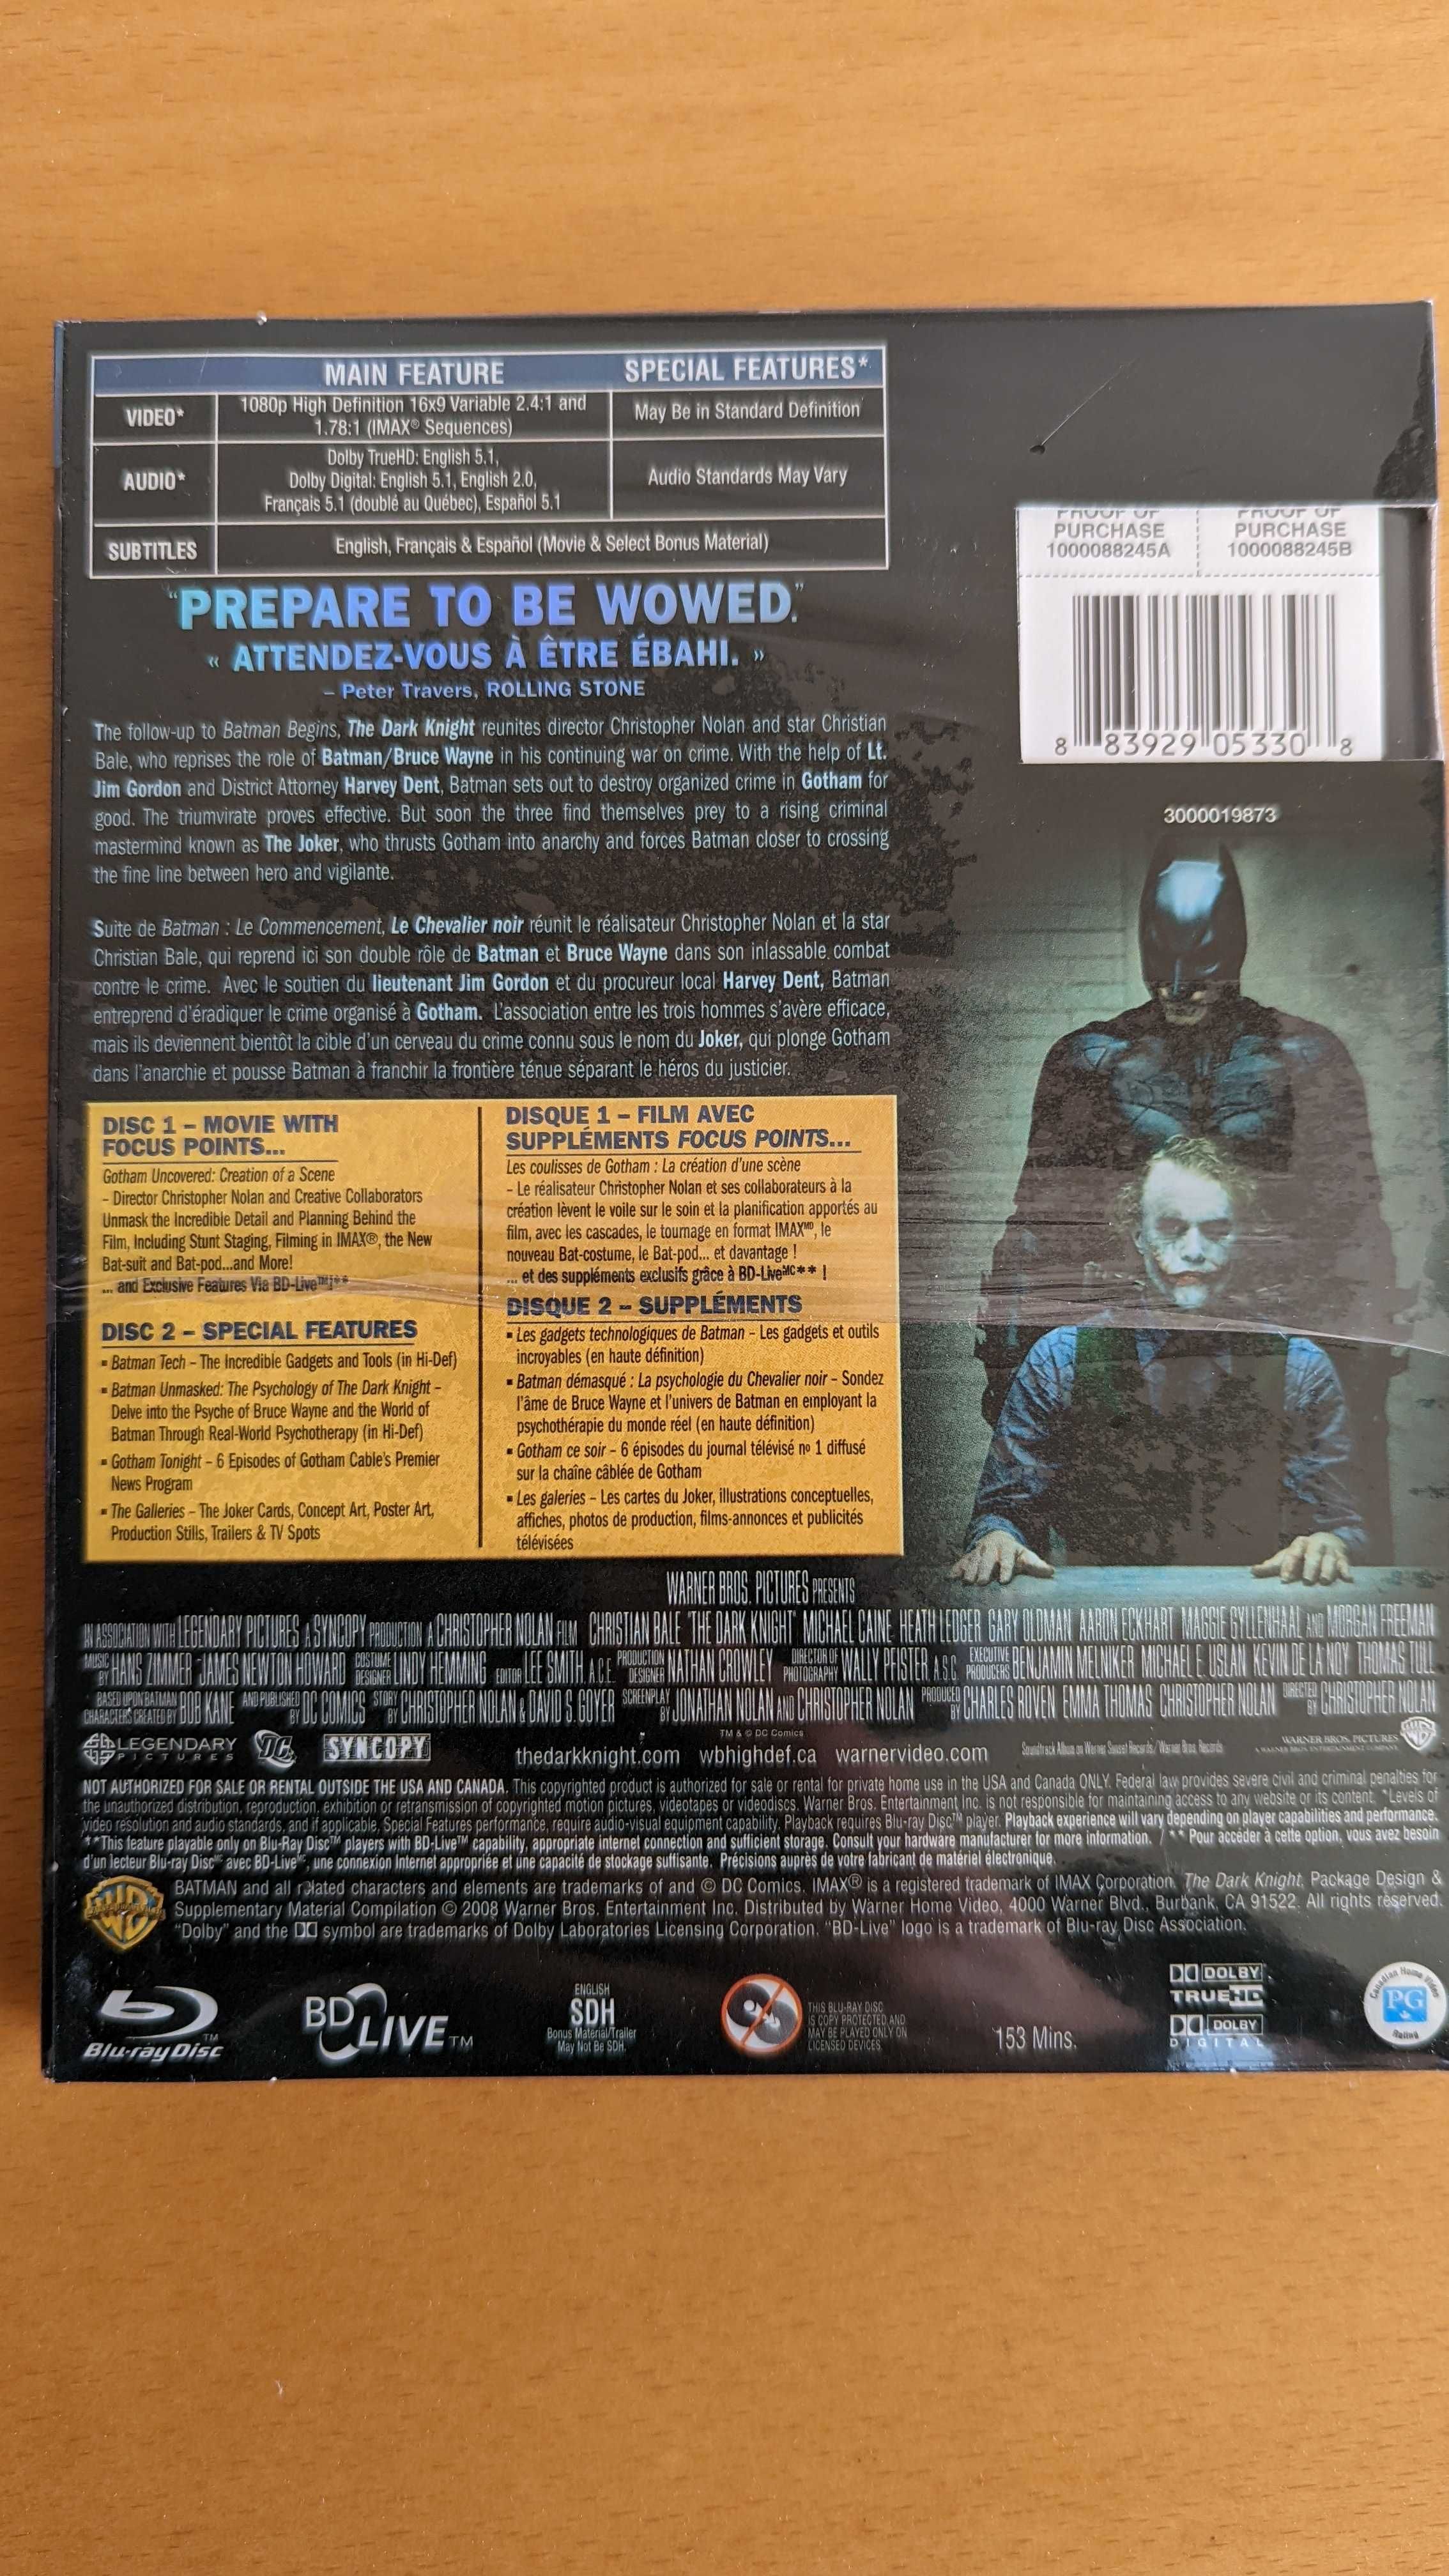 Cavaleiro das Trevas (The Dark Knight) - Edição Limitada "Clown Mask"